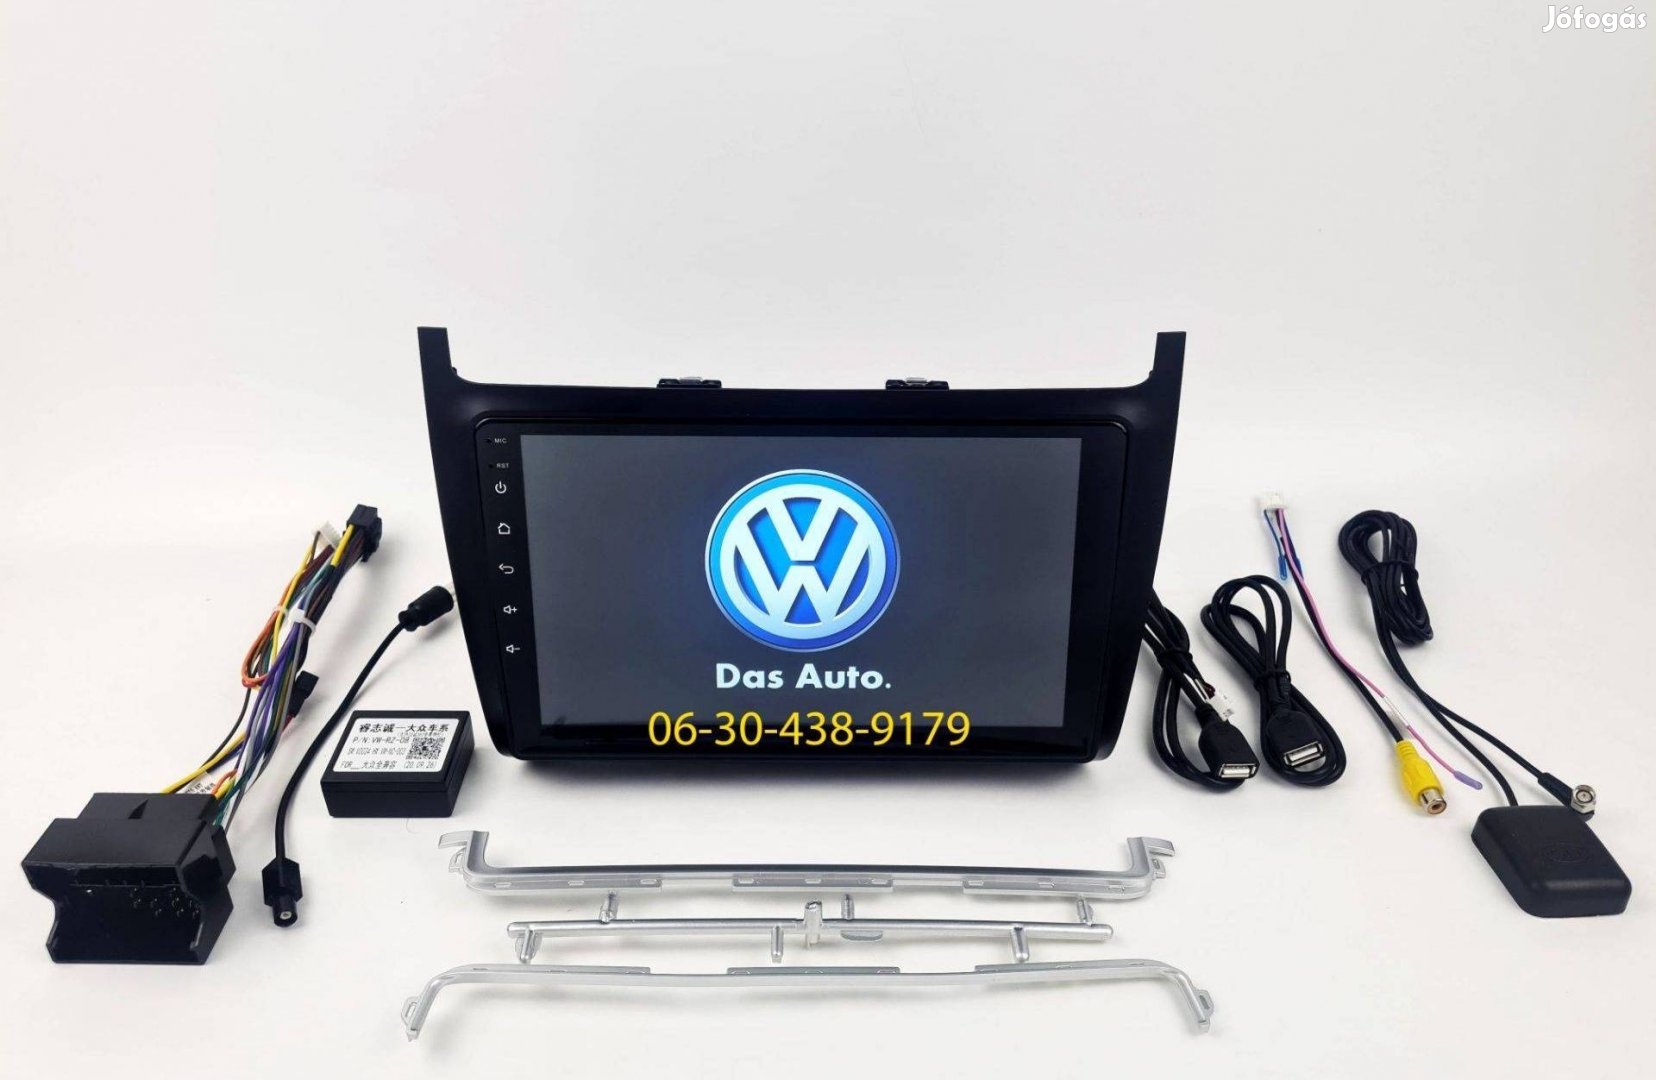 VW Polo Android autórádió multimédia fejegység navi 1-6GB Carplay